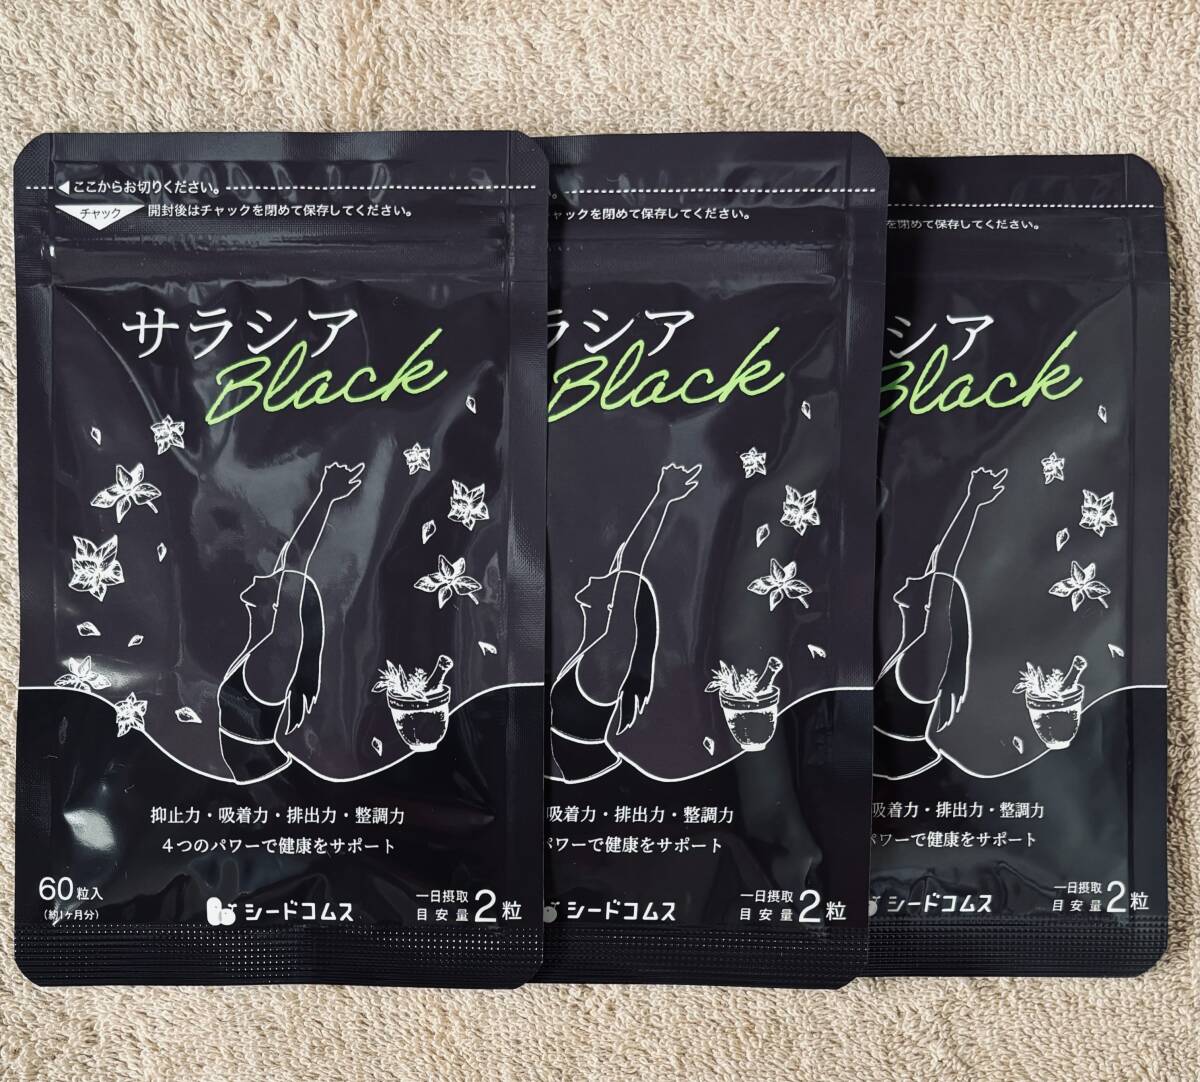 【送料無料】サラシアブラック 約3ヶ月分(1ヶ月分60粒入×3袋) ダイエット アカシア サラシア茶 チャコール 炭 サプリメント シードコムスの画像1